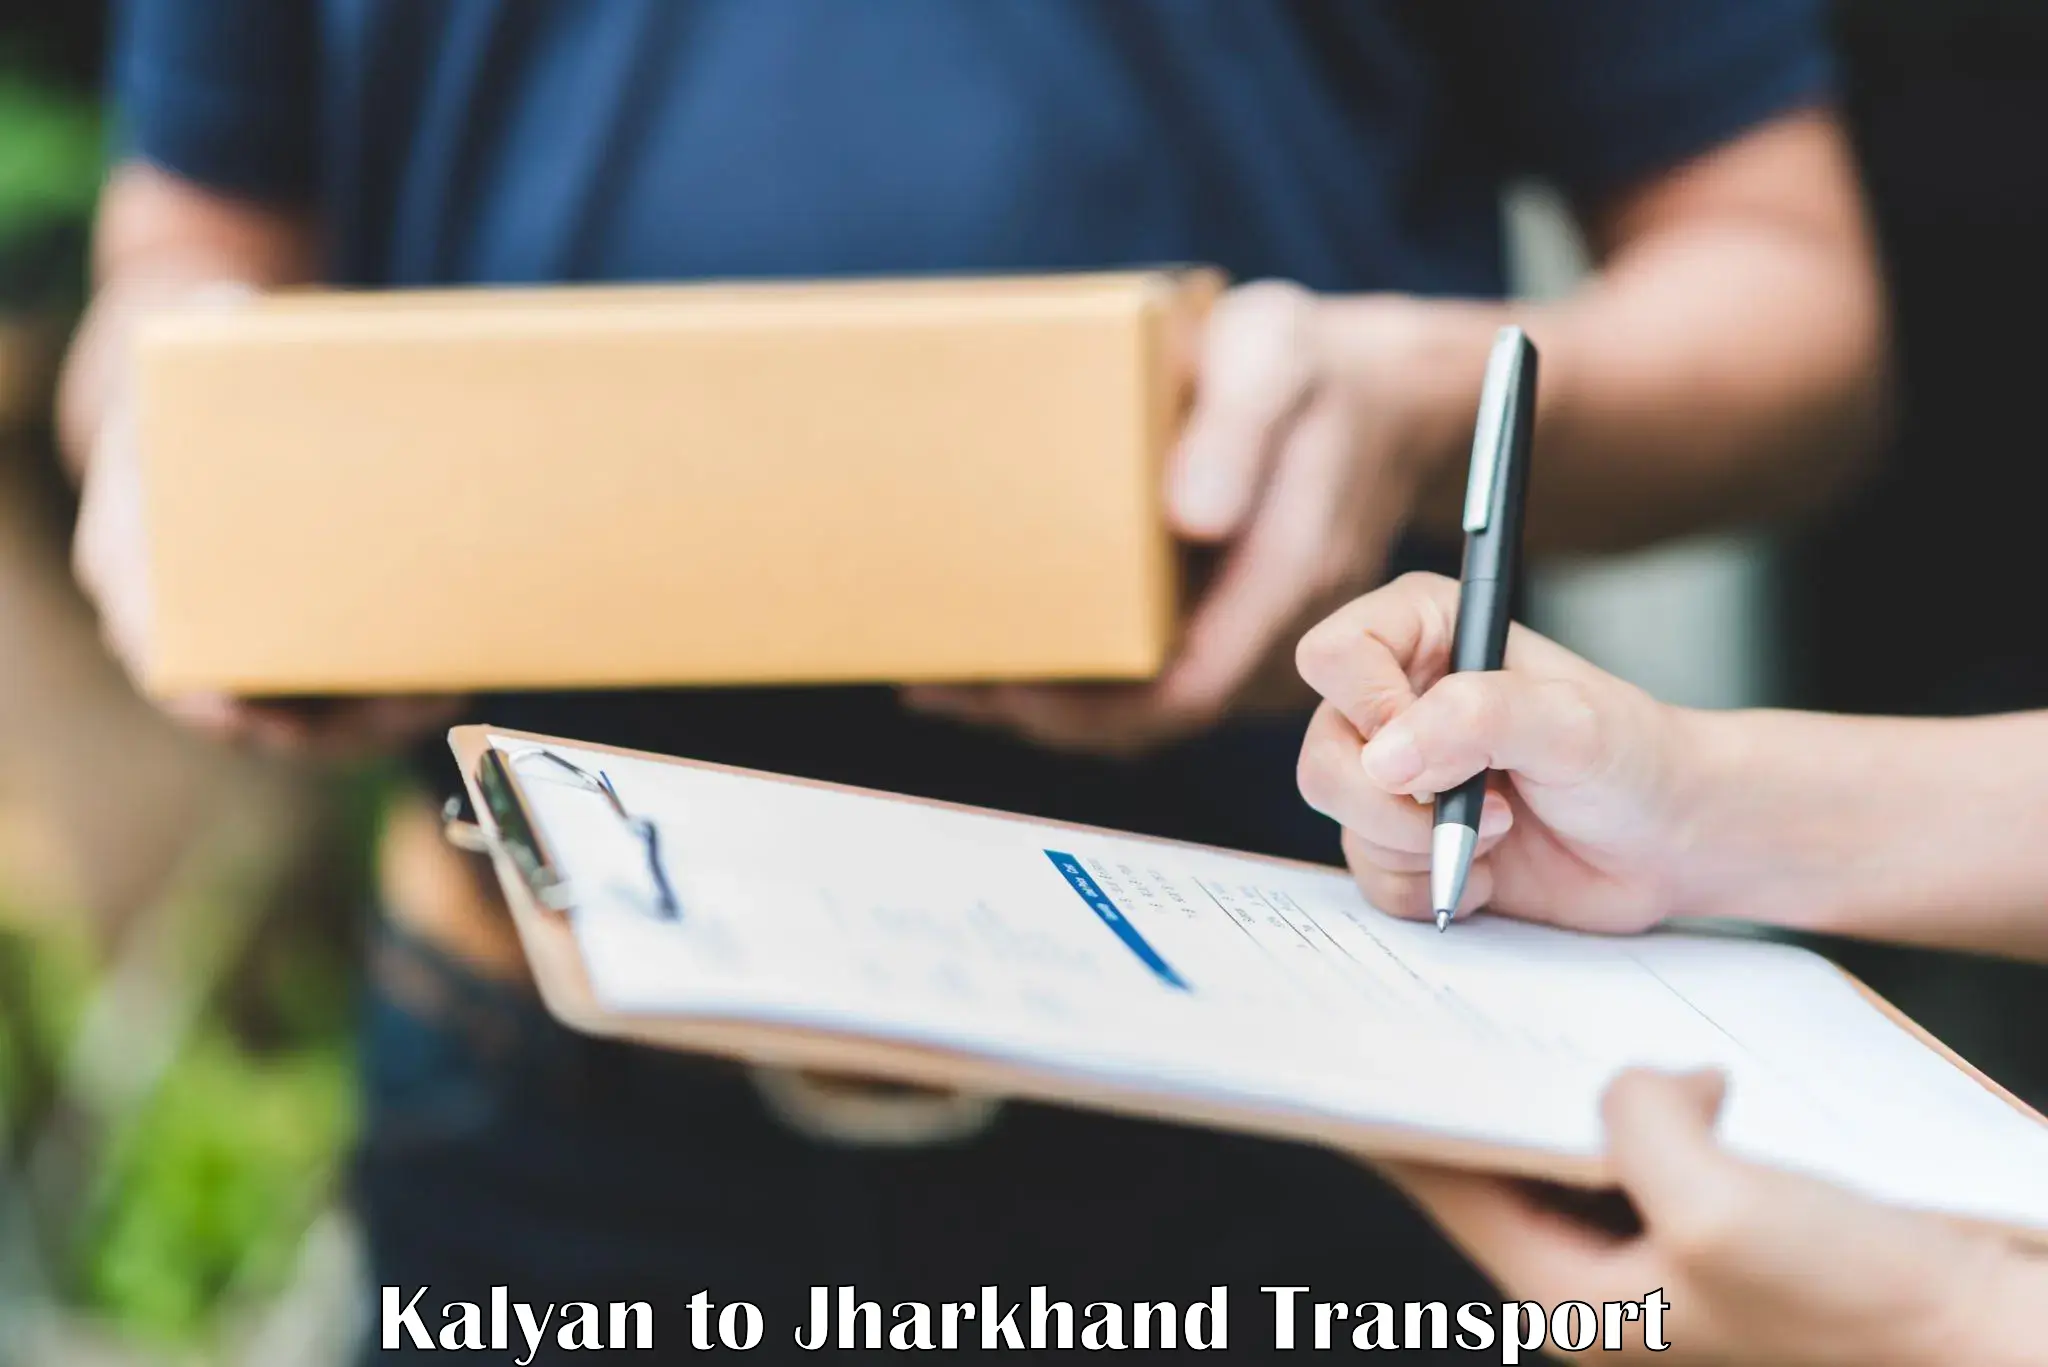 Lorry transport service Kalyan to Adityapur